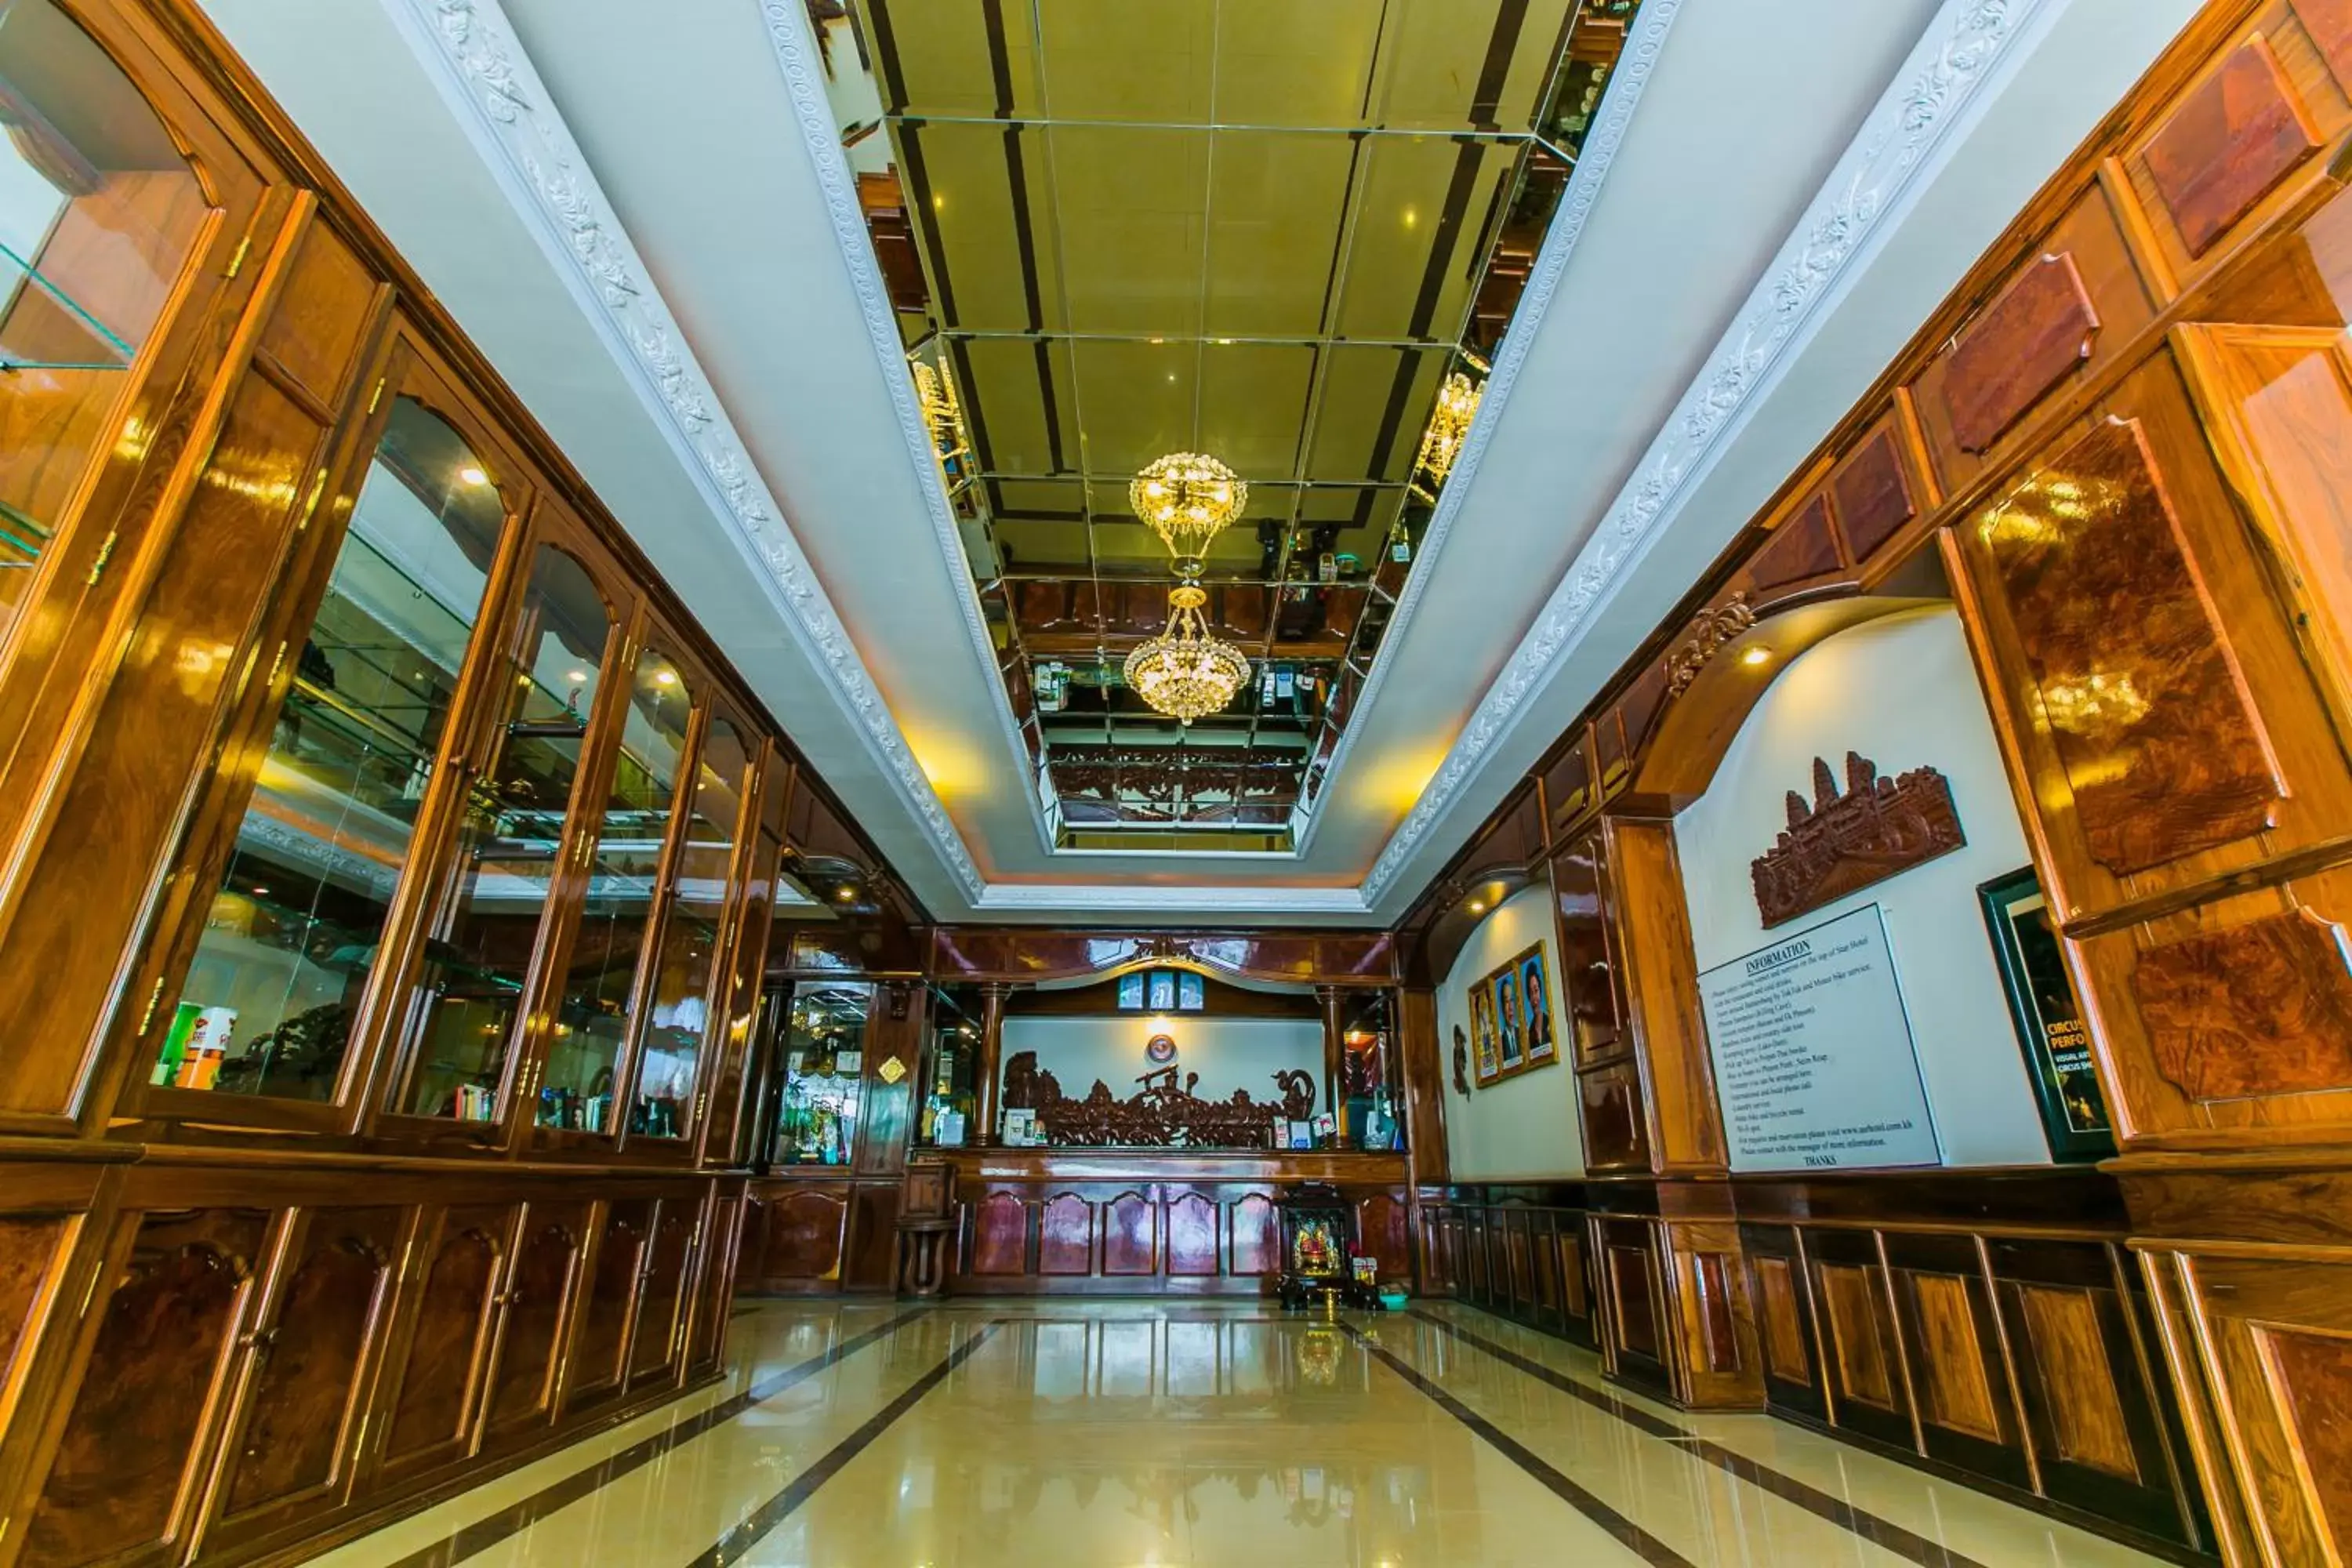 Lobby or reception in Star Hotel